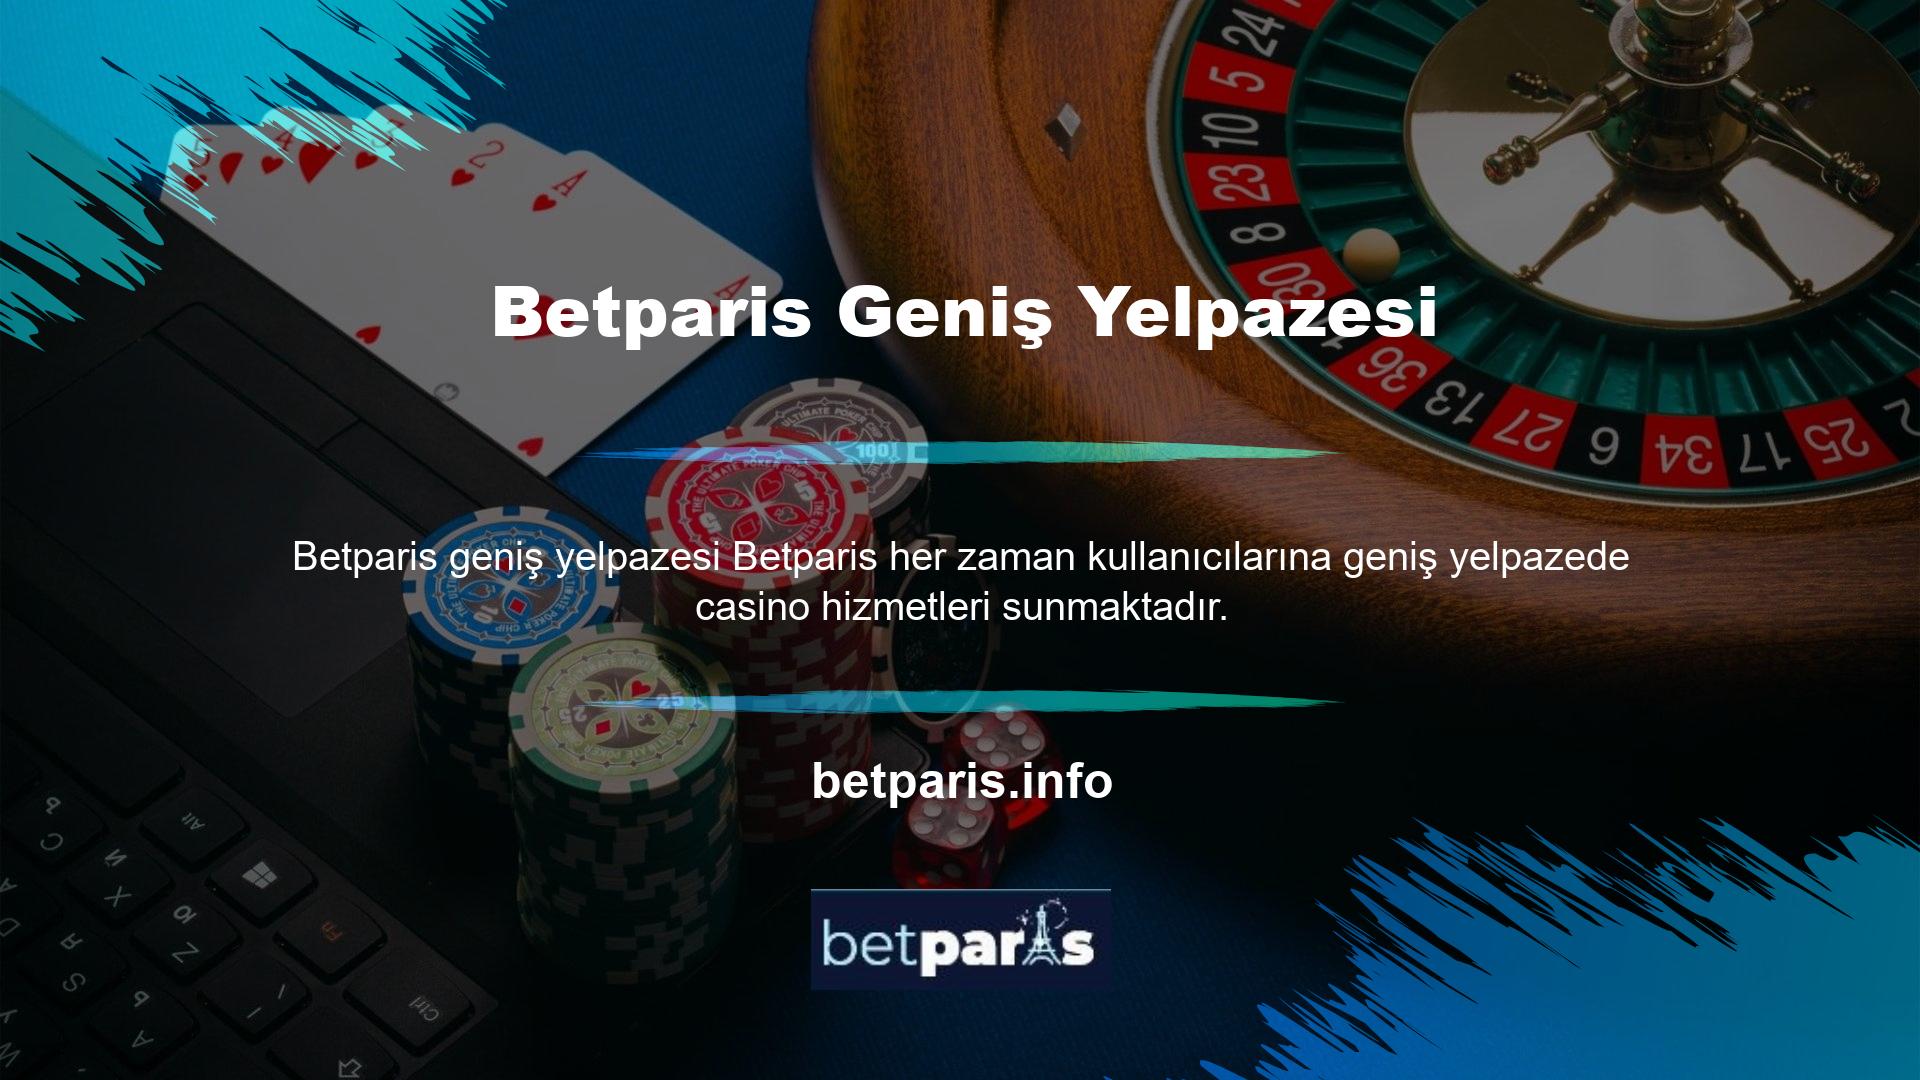 Binlerce slot makinesinin yer aldığı Betparis web sitesinden kazancınızı her zaman kontrol edebilirsiniz